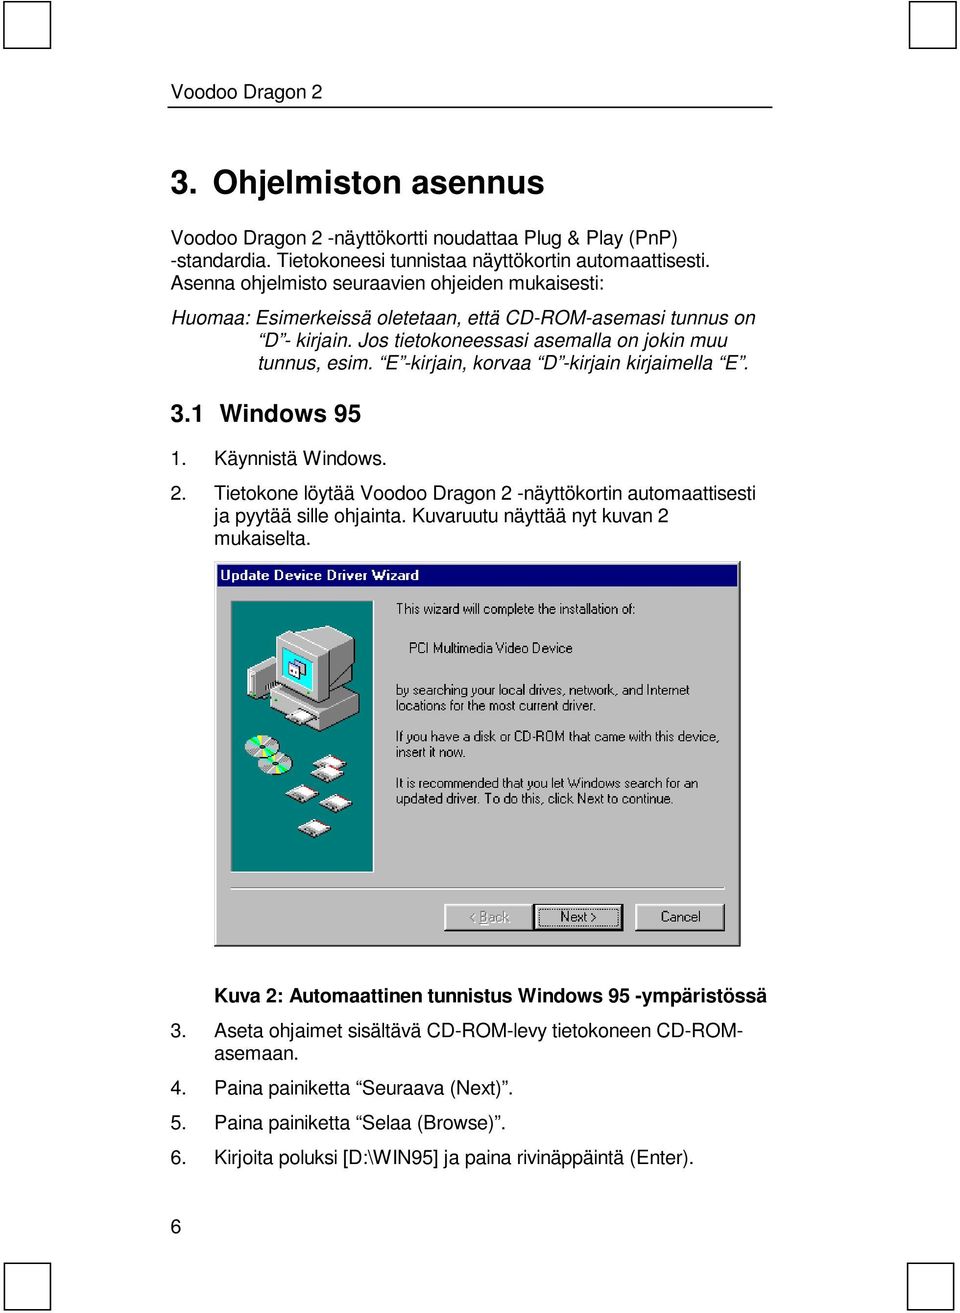 E -kirjain, korvaa D -kirjain kirjaimella E. 3.1 Windows 95 1. Käynnistä Windows. 2. Tietokone löytää Voodoo Dragon 2 -näyttökortin automaattisesti ja pyytää sille ohjainta.